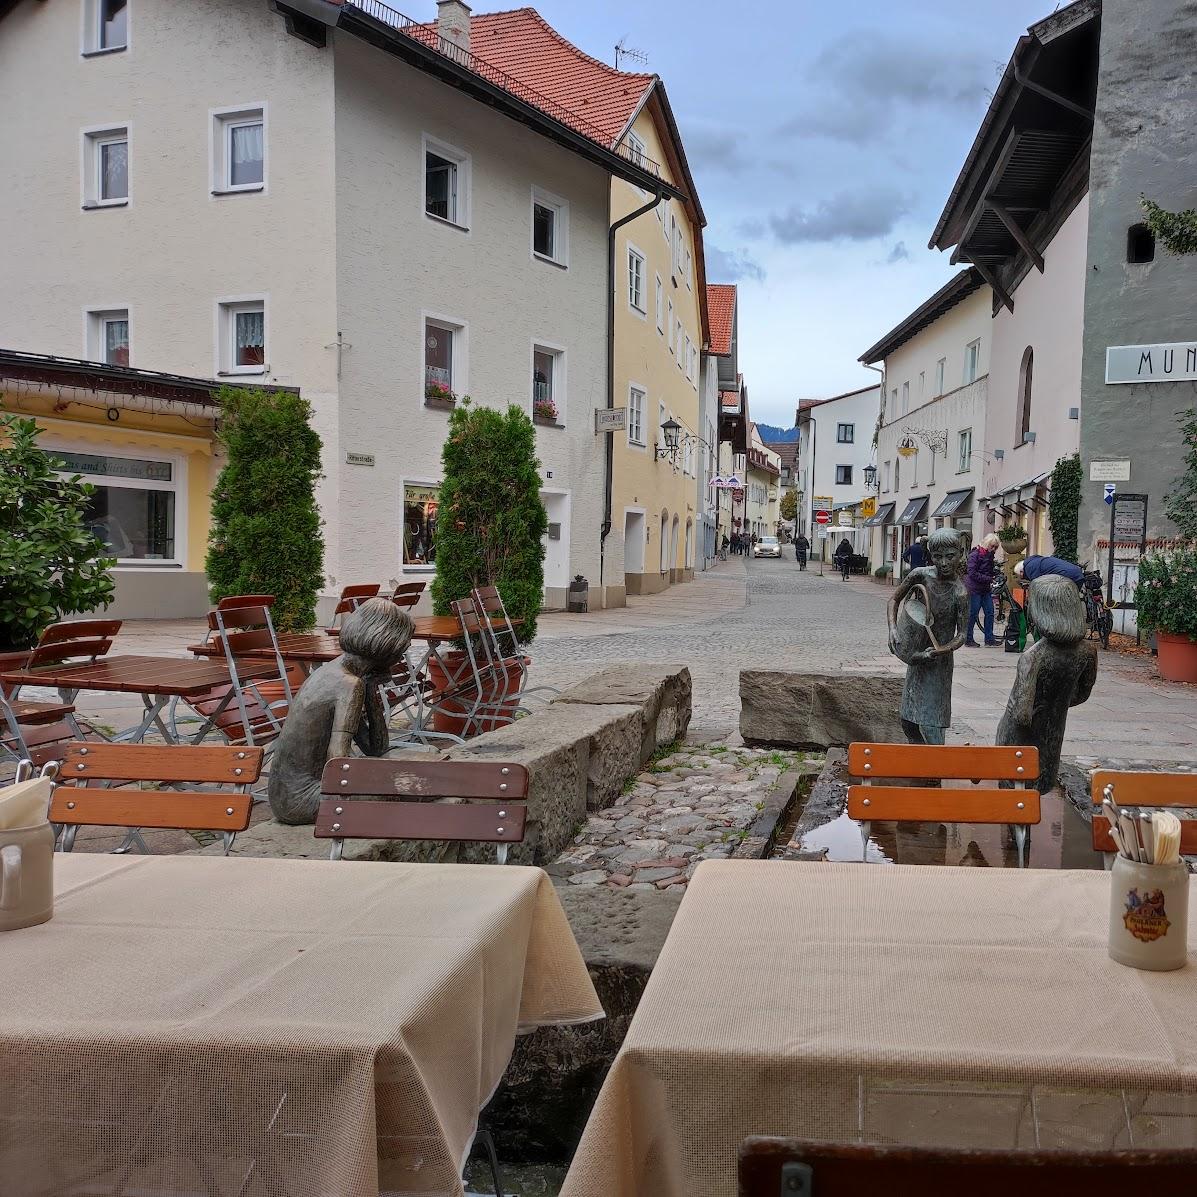 Restaurant "Zum Franziskaner" in Füssen